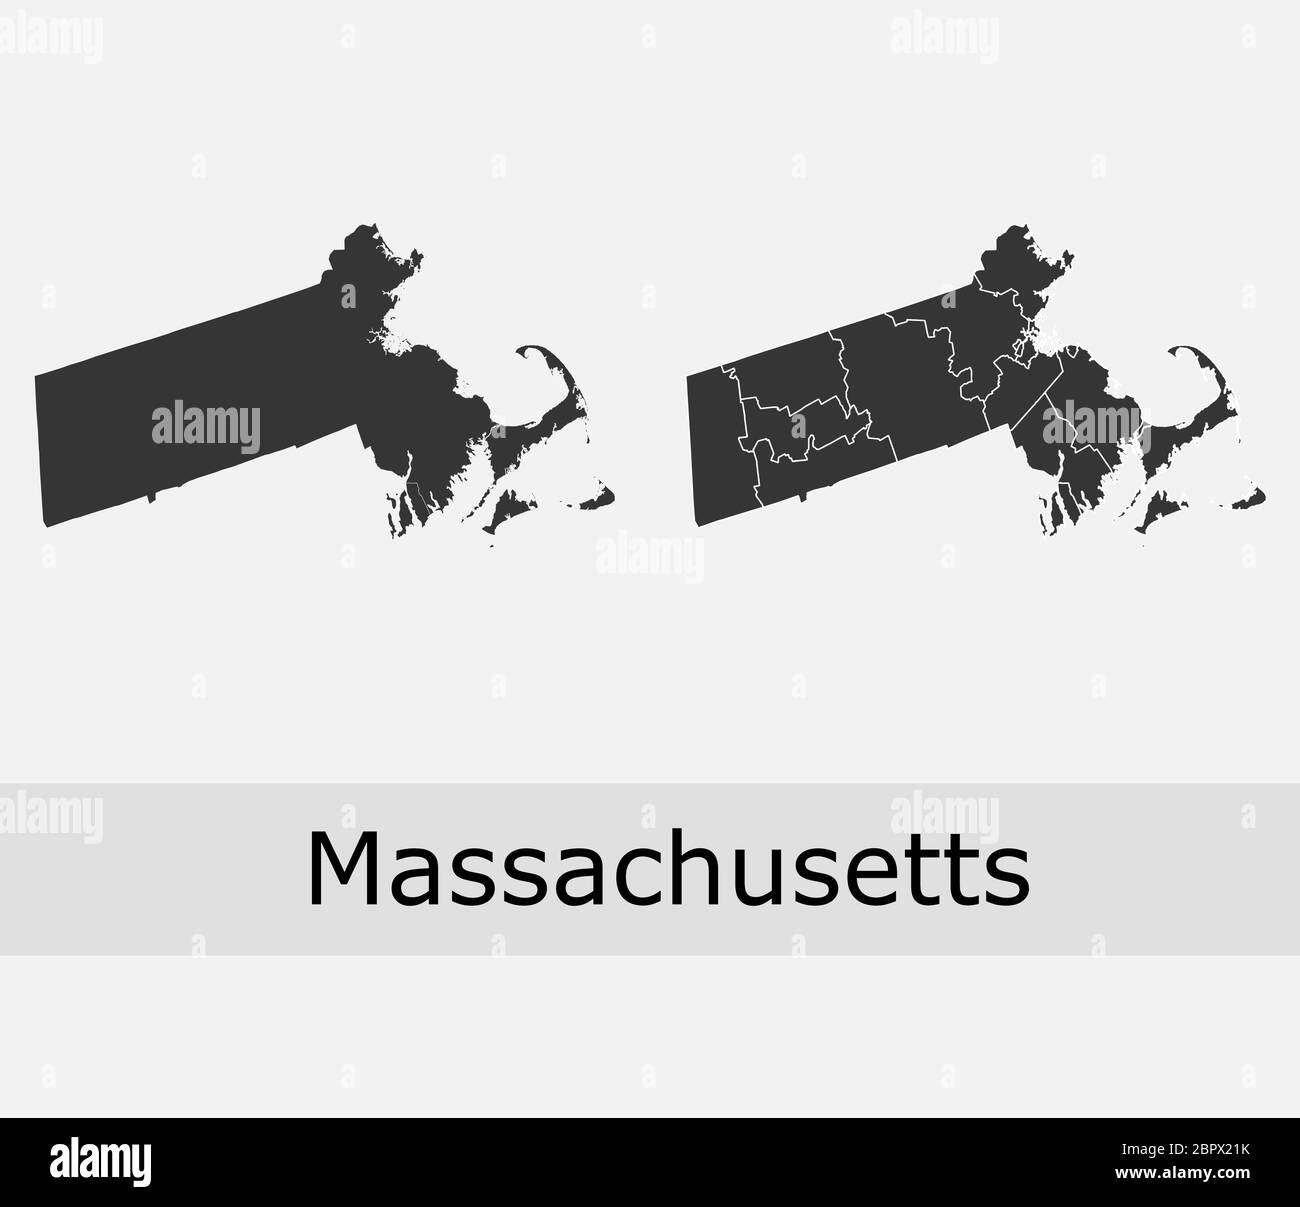 Cartes du Massachusetts vector Outline comtés, townships, régions, municipalités, départements, frontières Illustration de Vecteur